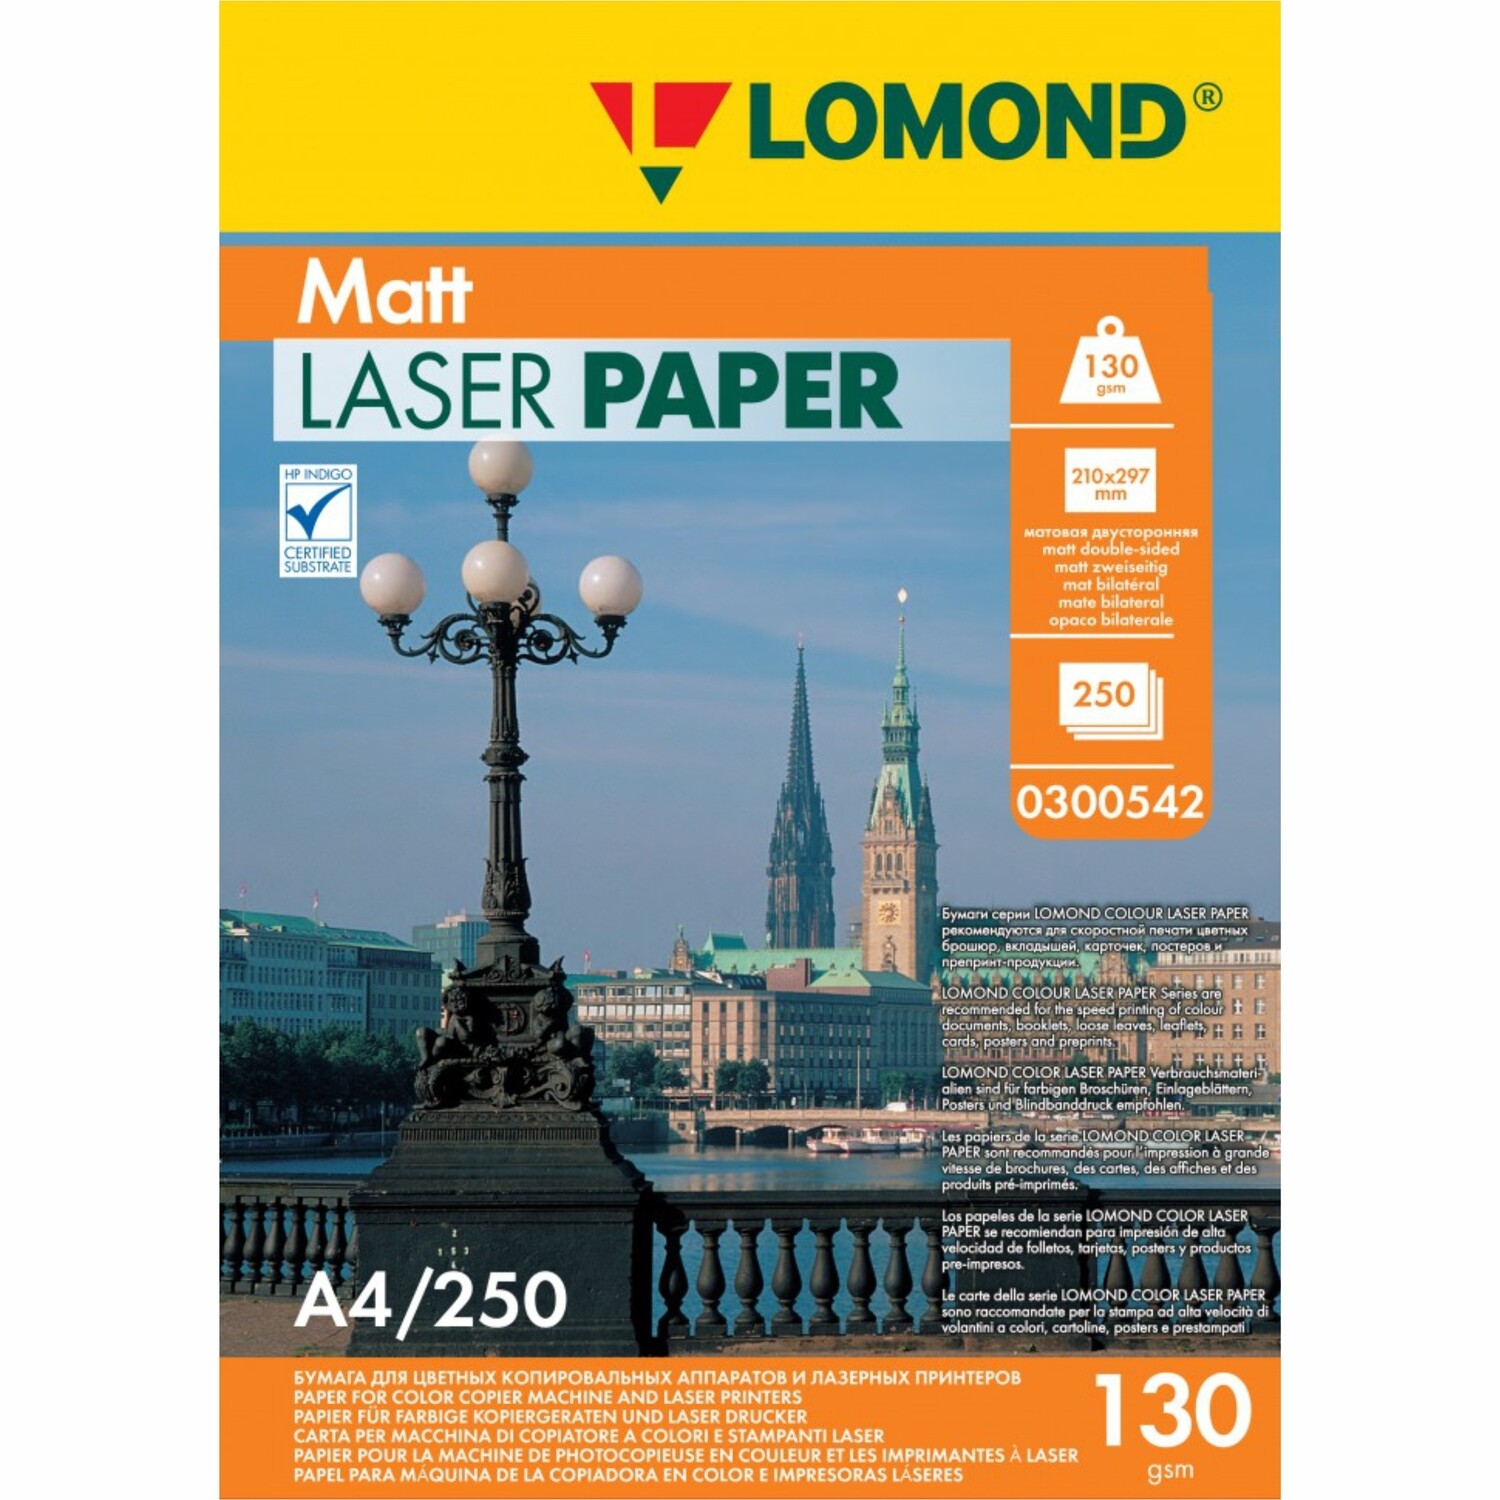 Матовая бумага - Lomond CLC Matt  - 130 г/м2, А4, 250 листов для лазерной печати 0300542